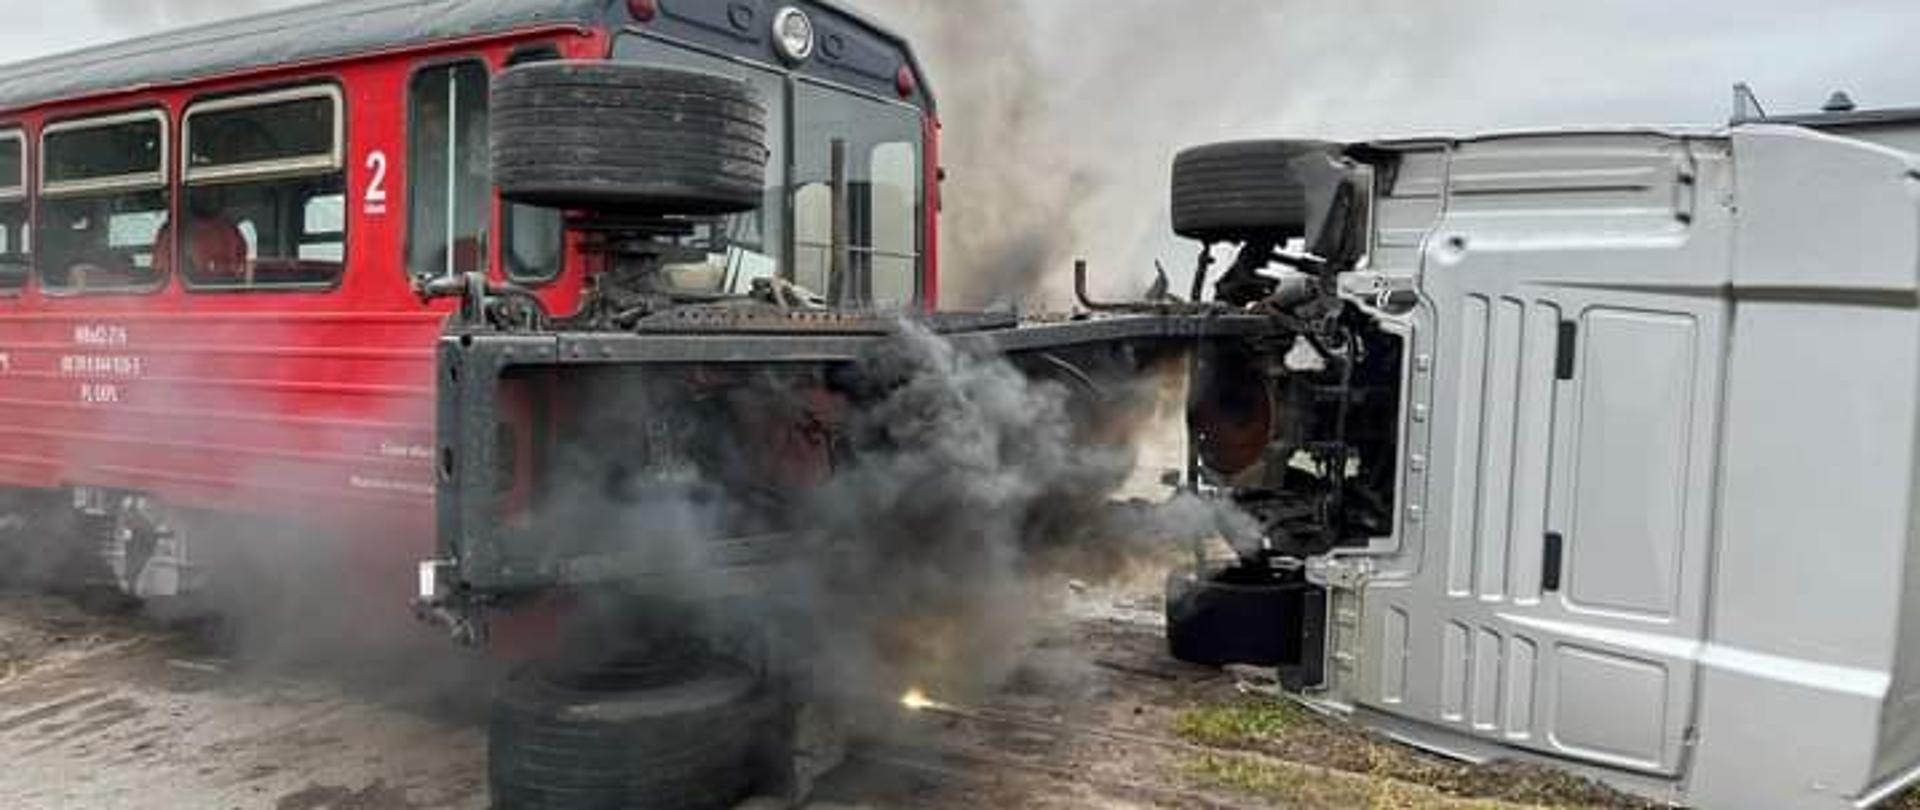 Zdjęcie przedstawia pozorowane zderzenie pociągu z samochodem ciężarowym na przejeździe kolejowym. Samochód ciężarowy jest przewrócony na prawy bok.